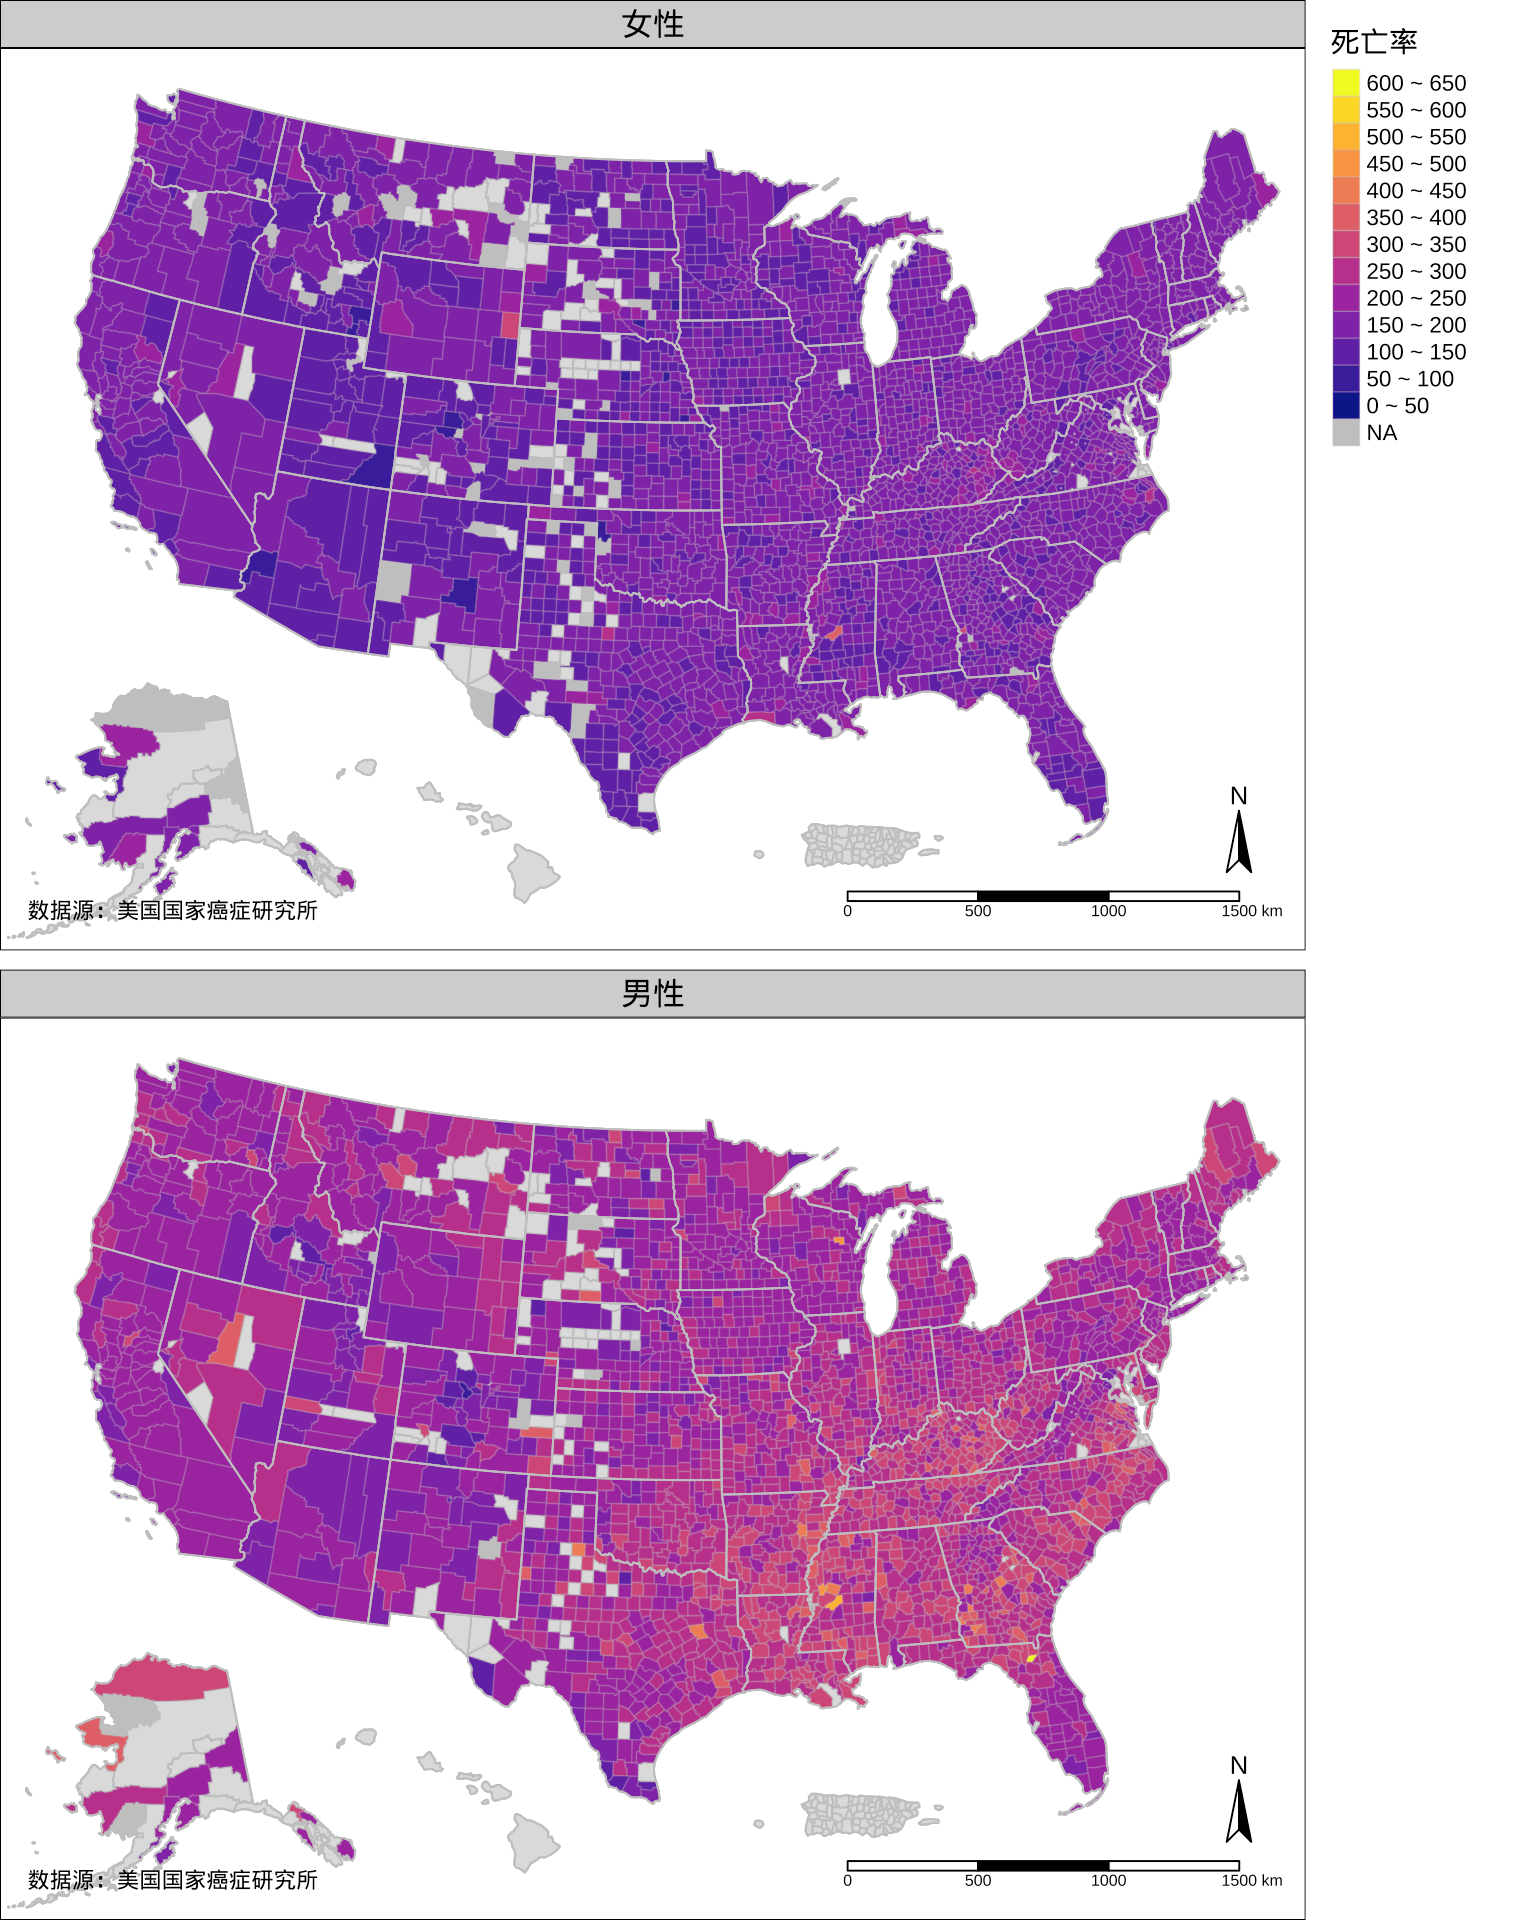 1999-2003 年美国各个郡的年平均癌症死亡率分布